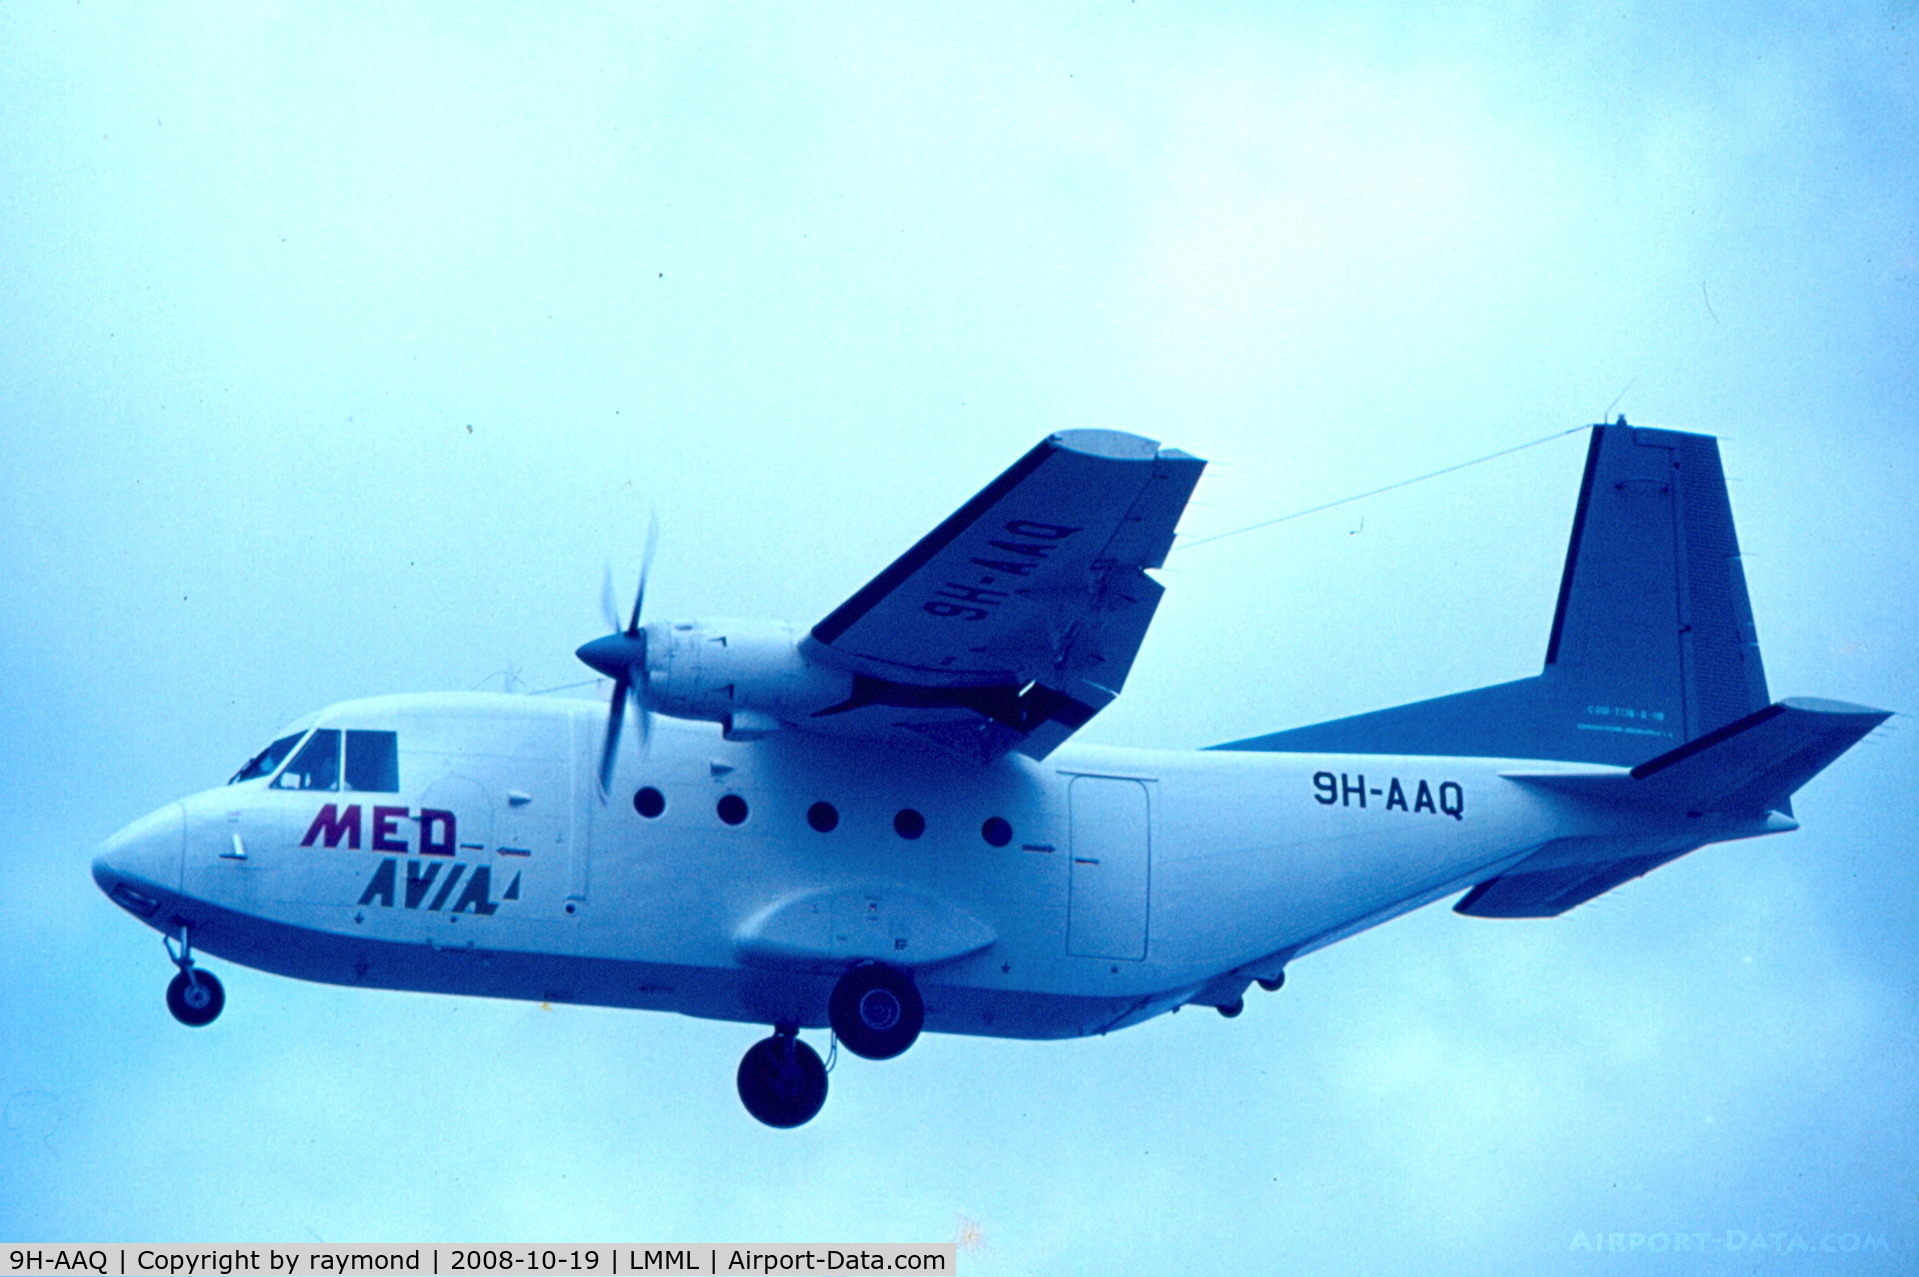 9H-AAQ, 1978 CASA C-212-200 Aviocar C/N 119, Casa212 9H-AAQ Medavia